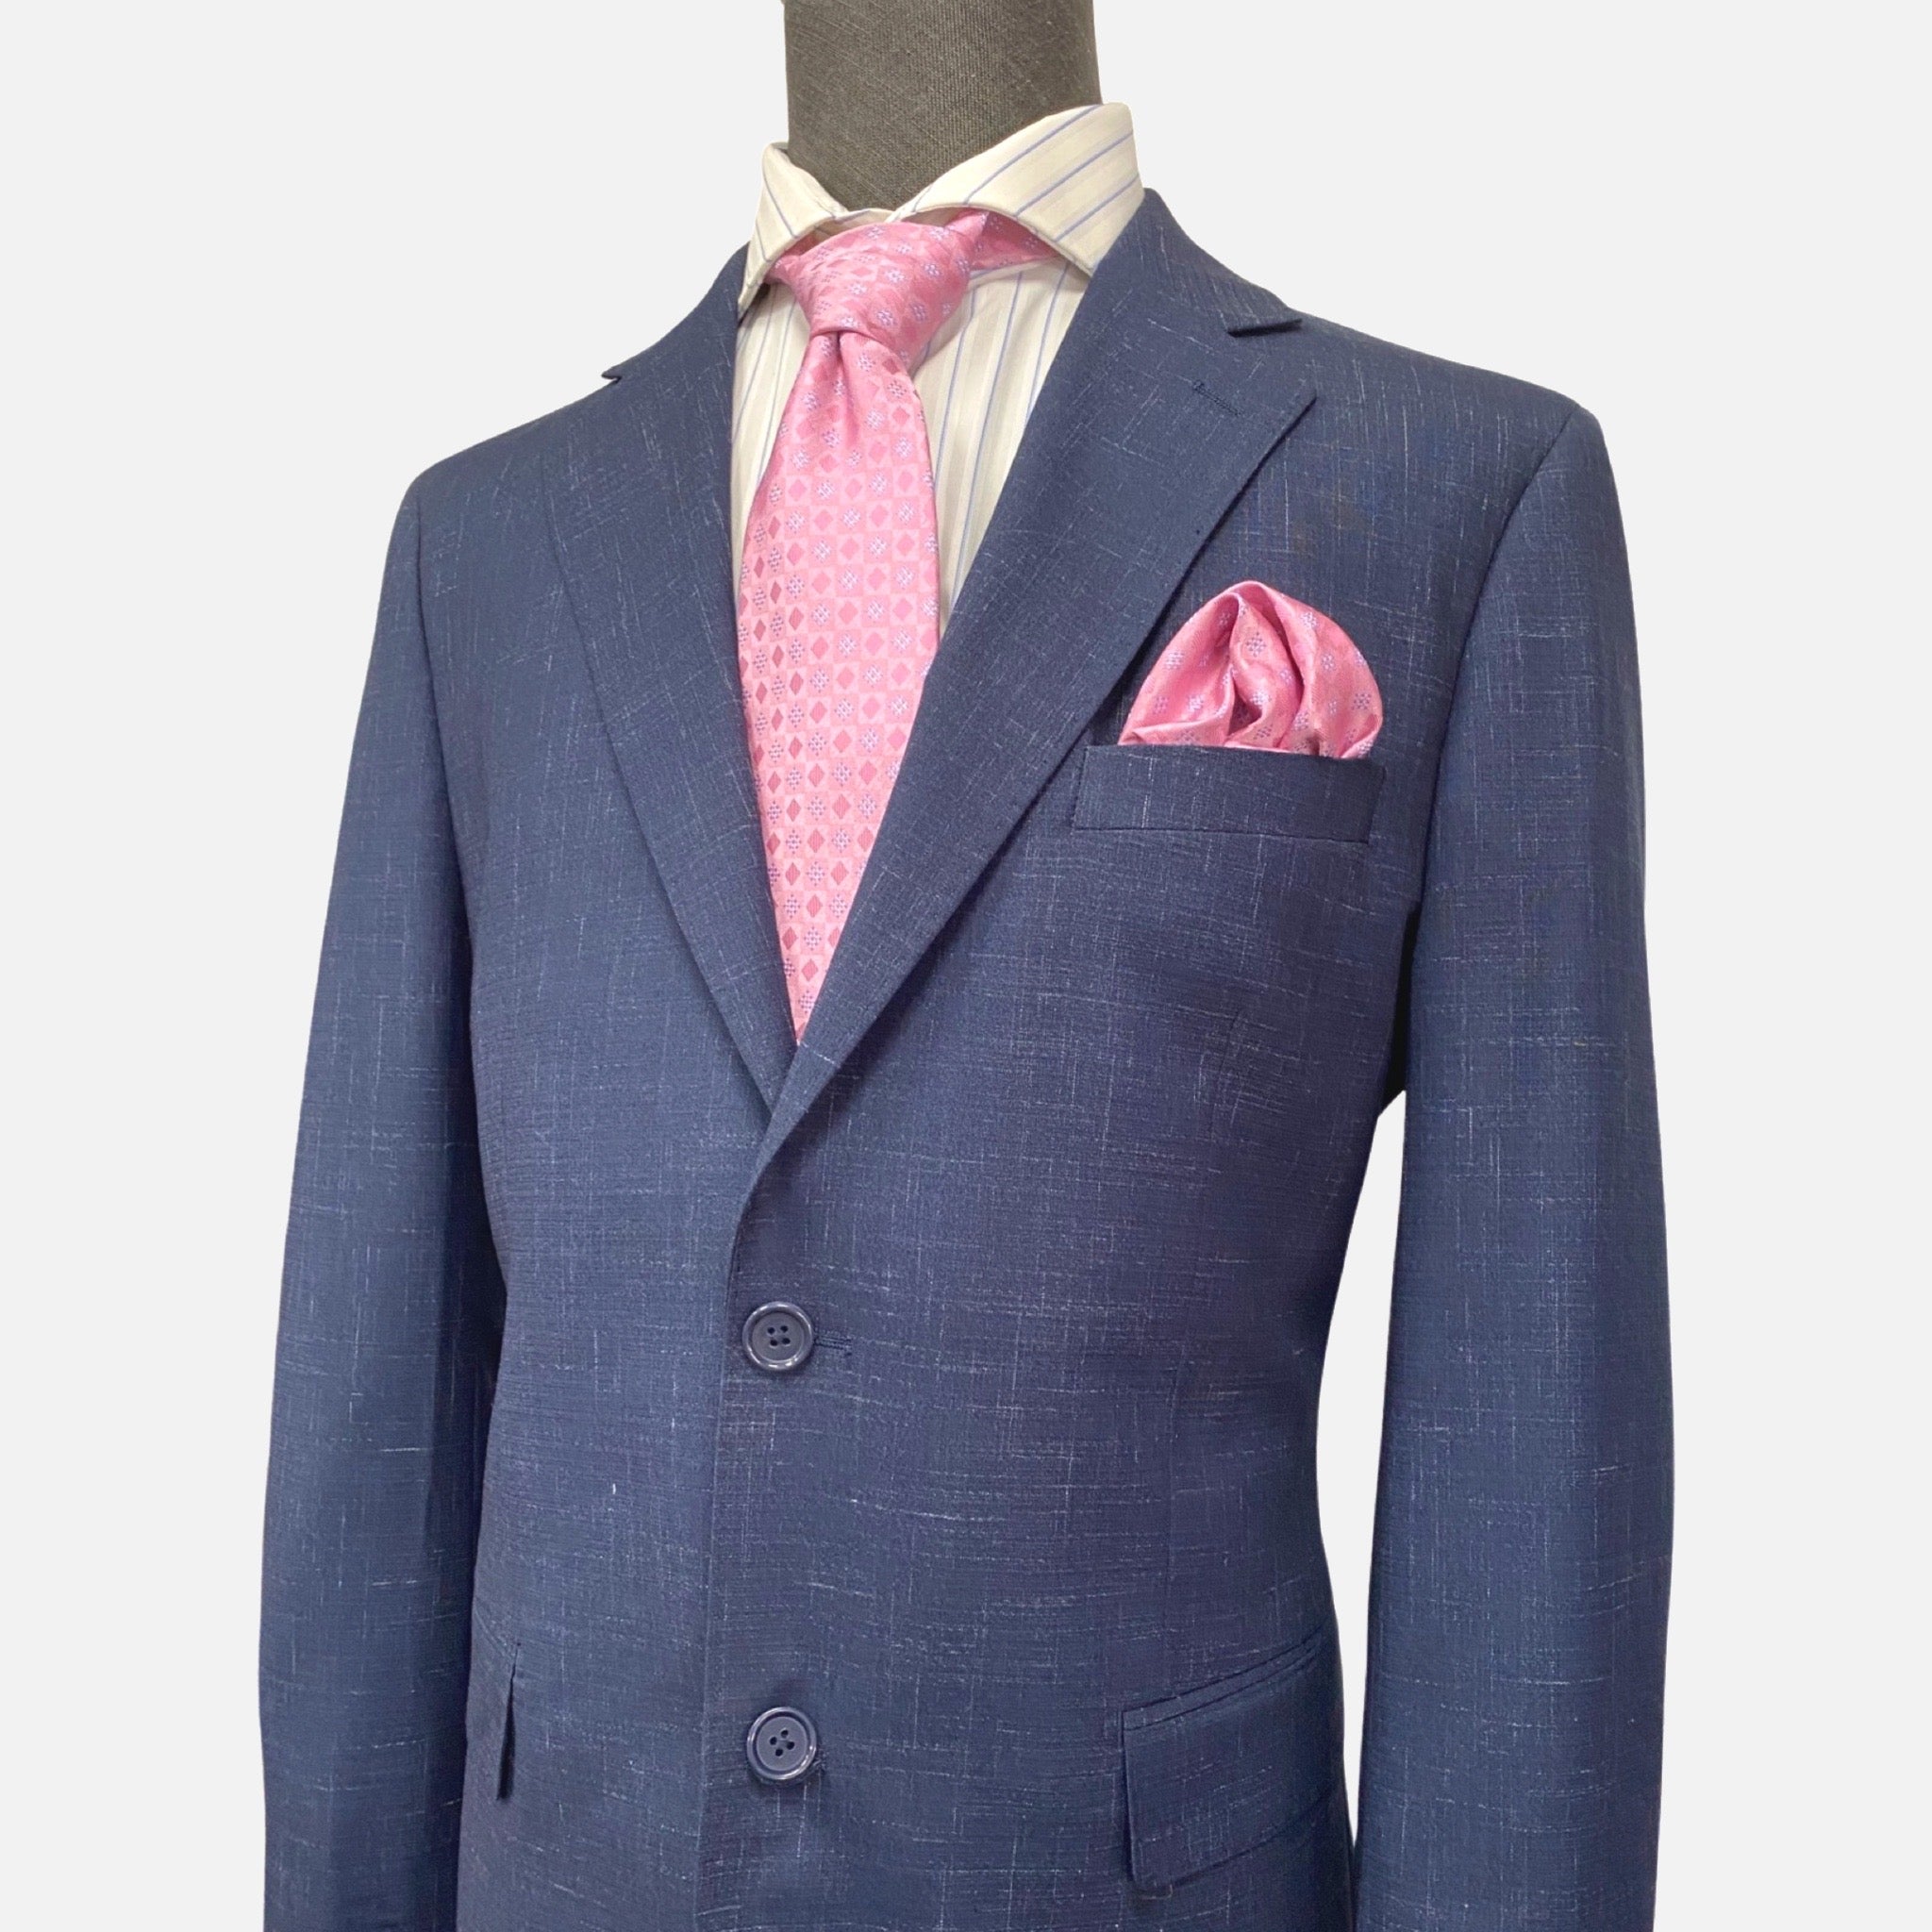 Men’s Blue Suit with Subtle Design - Single Breasted, Notch Lapel, Double Vents